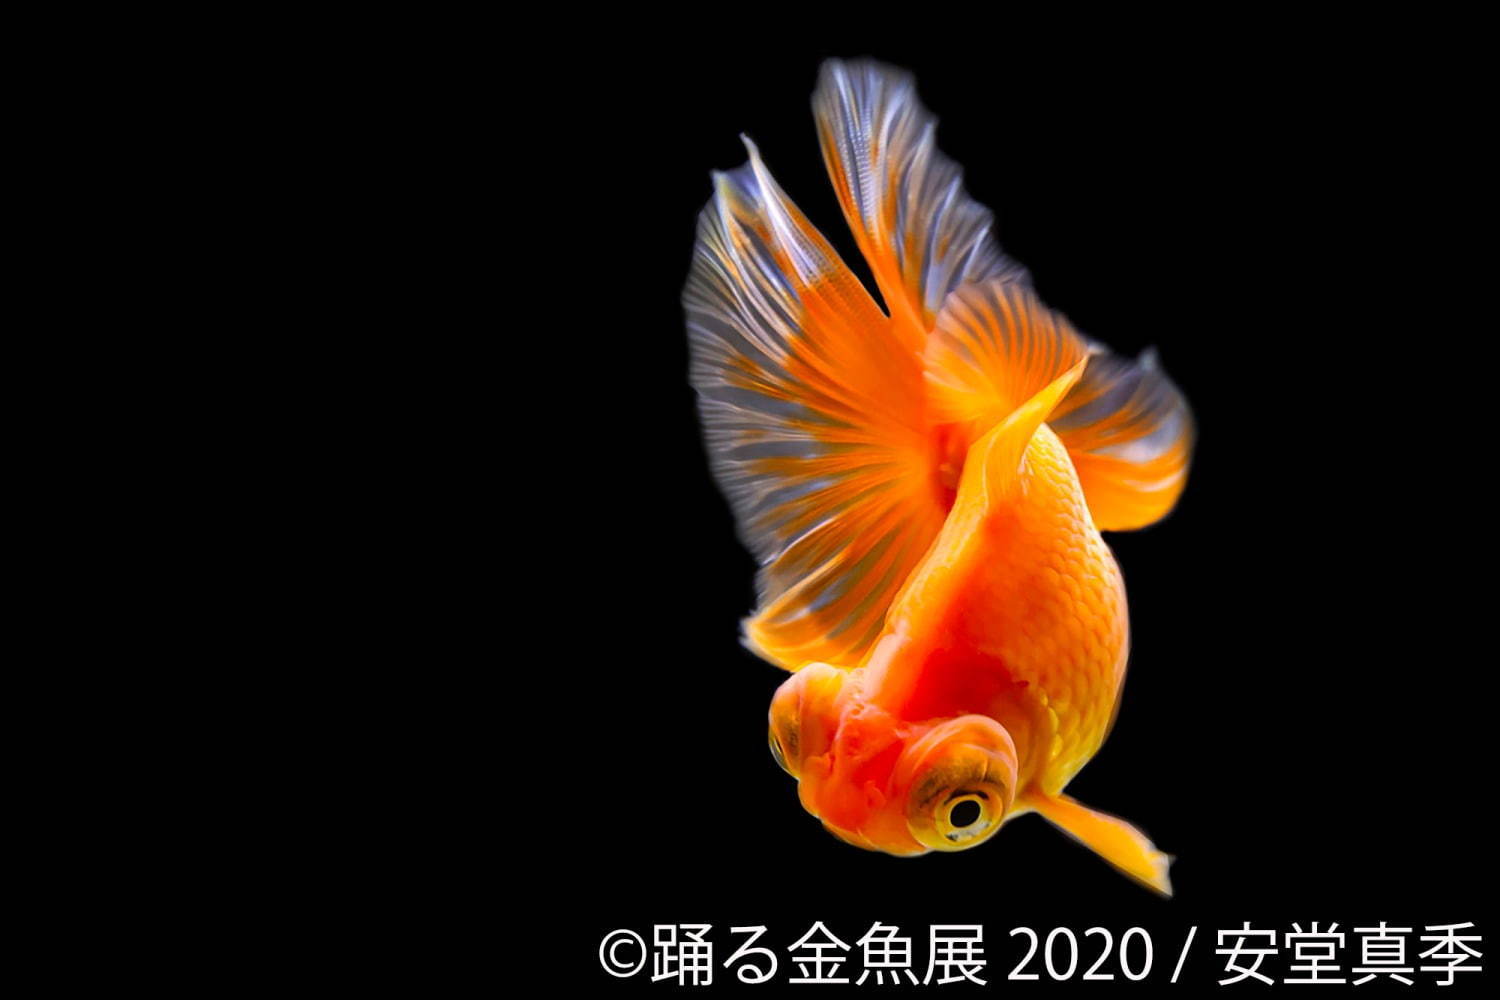 踊る金魚展 東京 名古屋で 金魚が泳ぐ 一瞬の美しさ を捉えた写真やグッズを展示販売 ファッションプレス